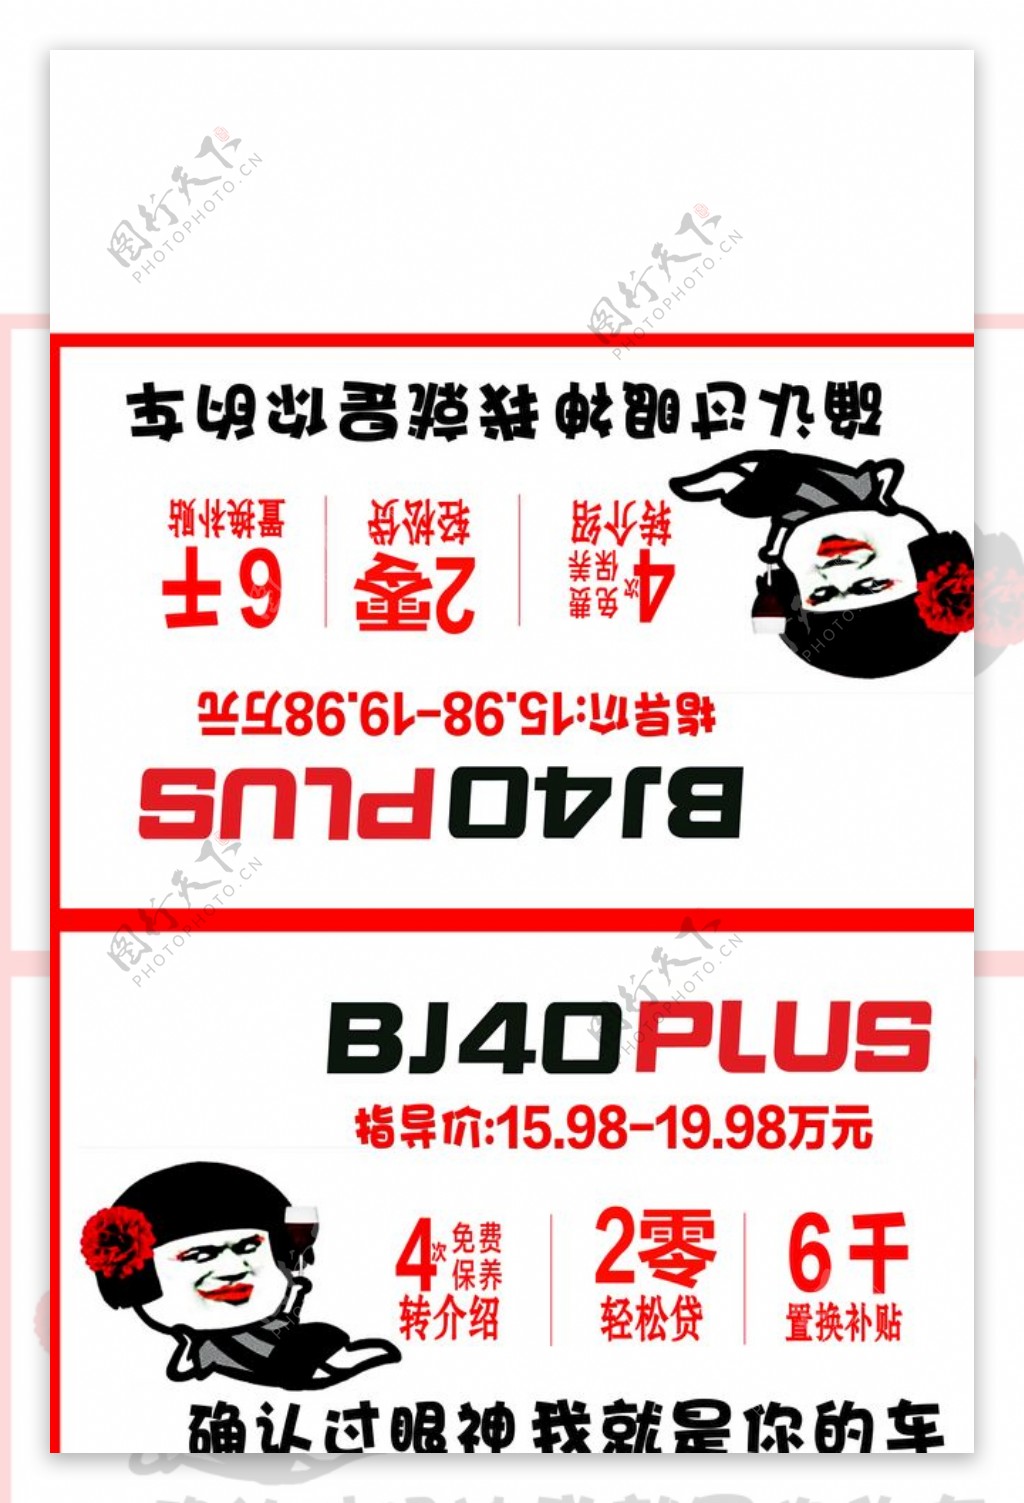 北京BJ40PLUS车顶牌